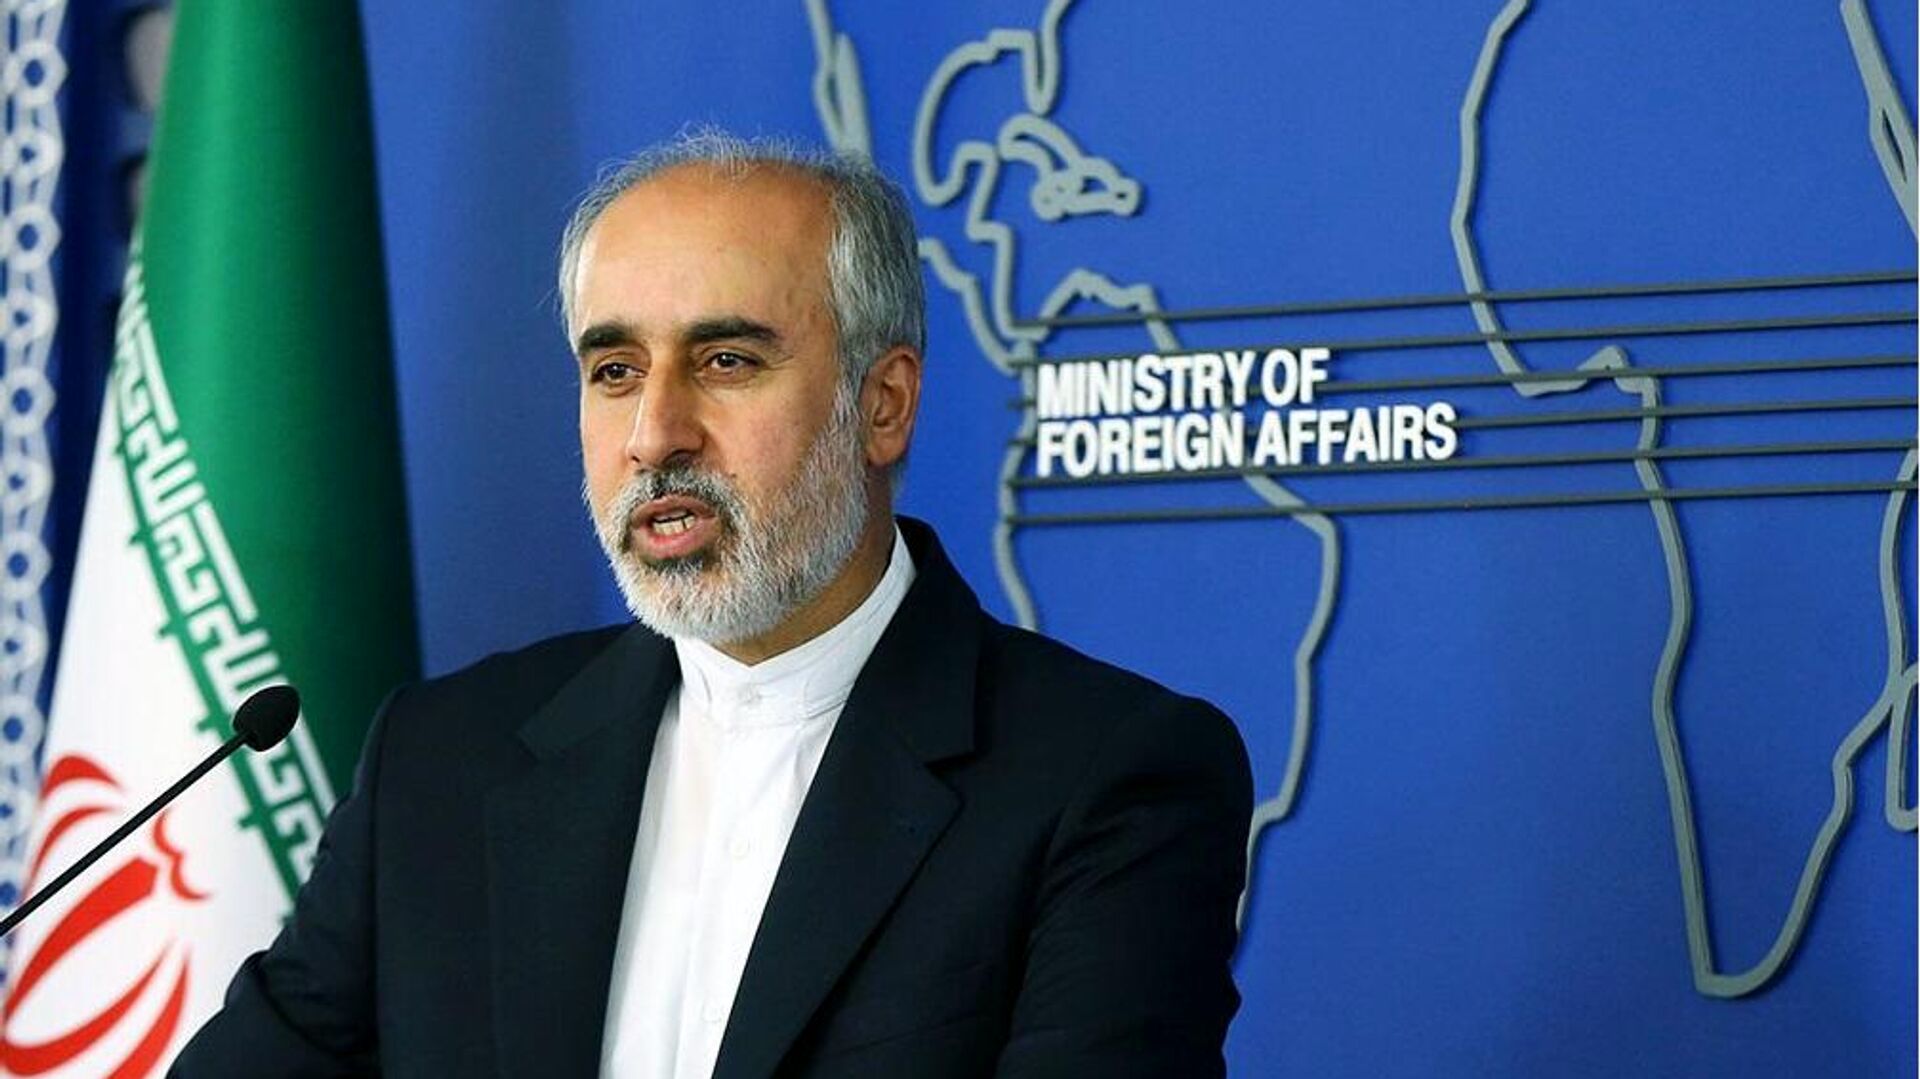  واکنش تهران به ادعای آزادسازی 10 میلیارد دلار از دارایی های ایران/ آماده تبادل زندانیان با آمریکا هستیم